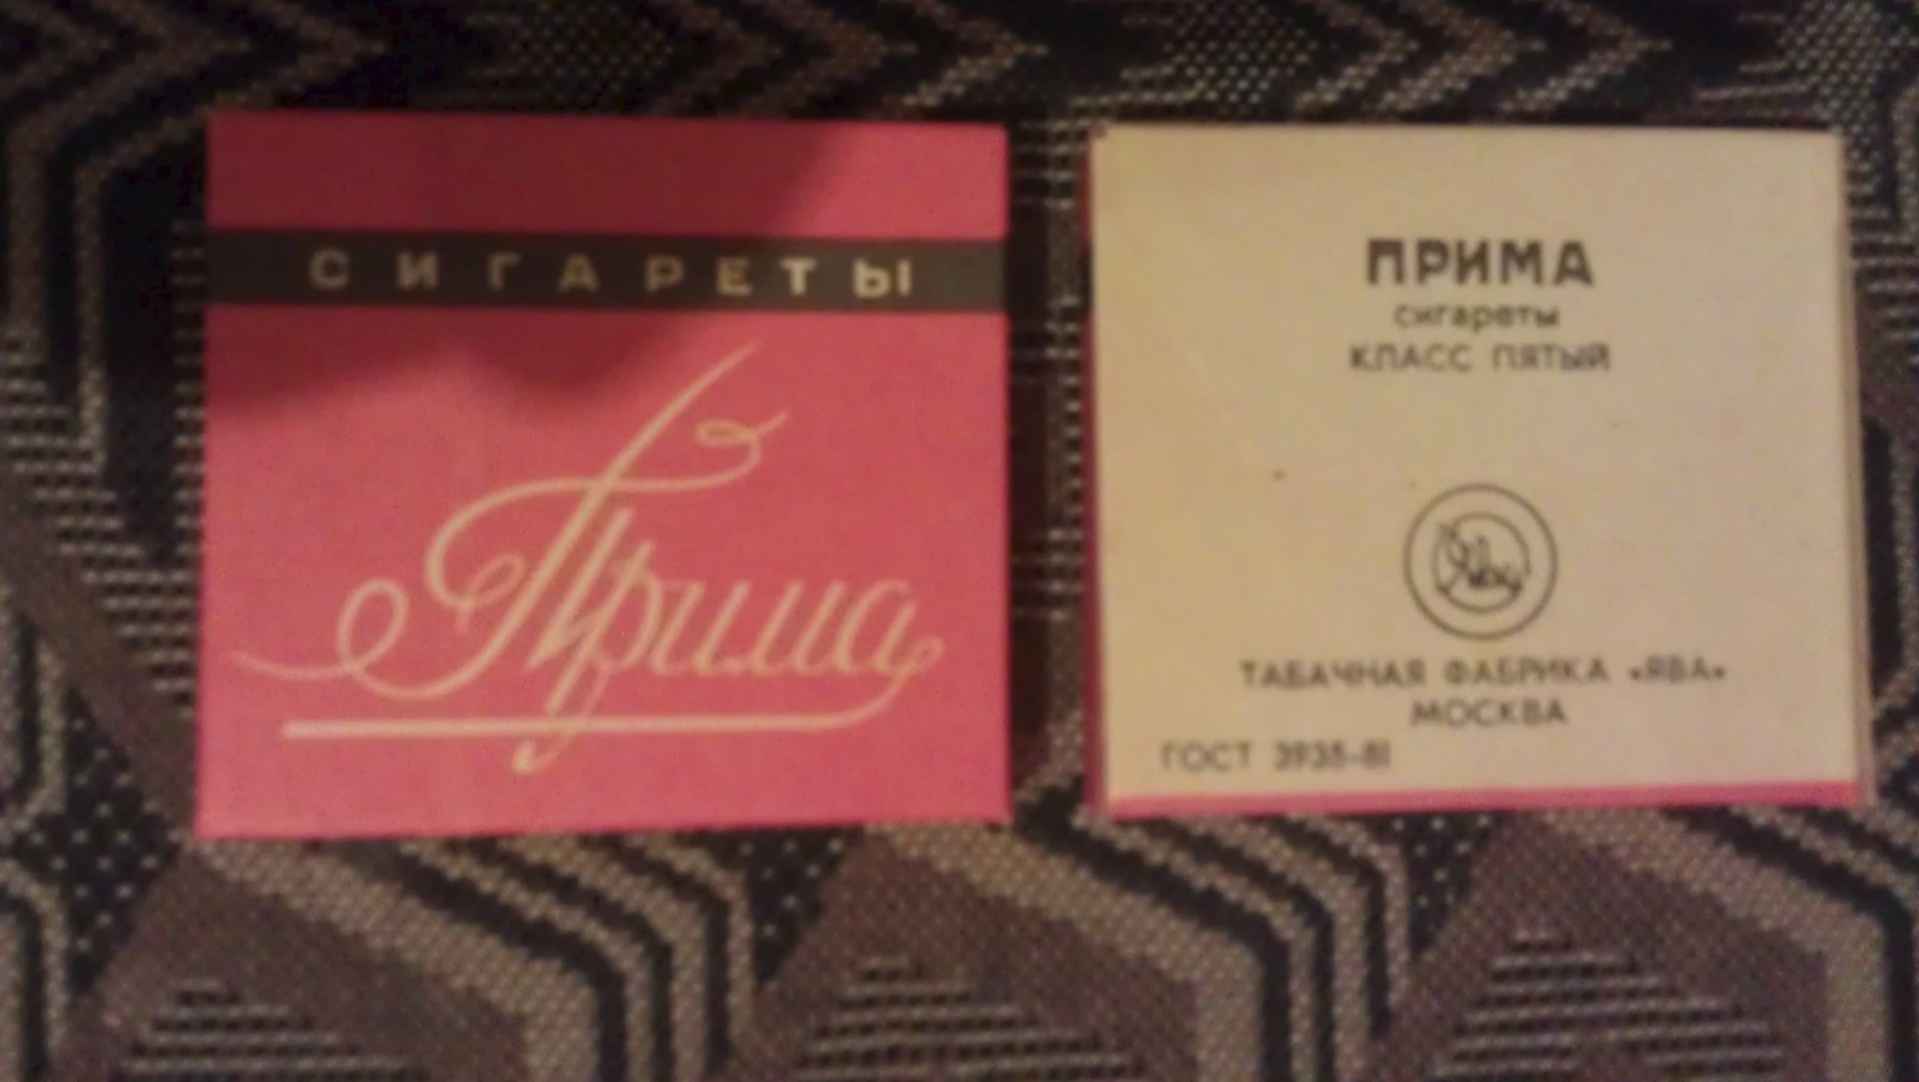 Советская прима. Сигареты Прима 90-х. Прима сигареты 90х Бонд. Сигареты 90х Прима Курская. Советские сигареты Прима.